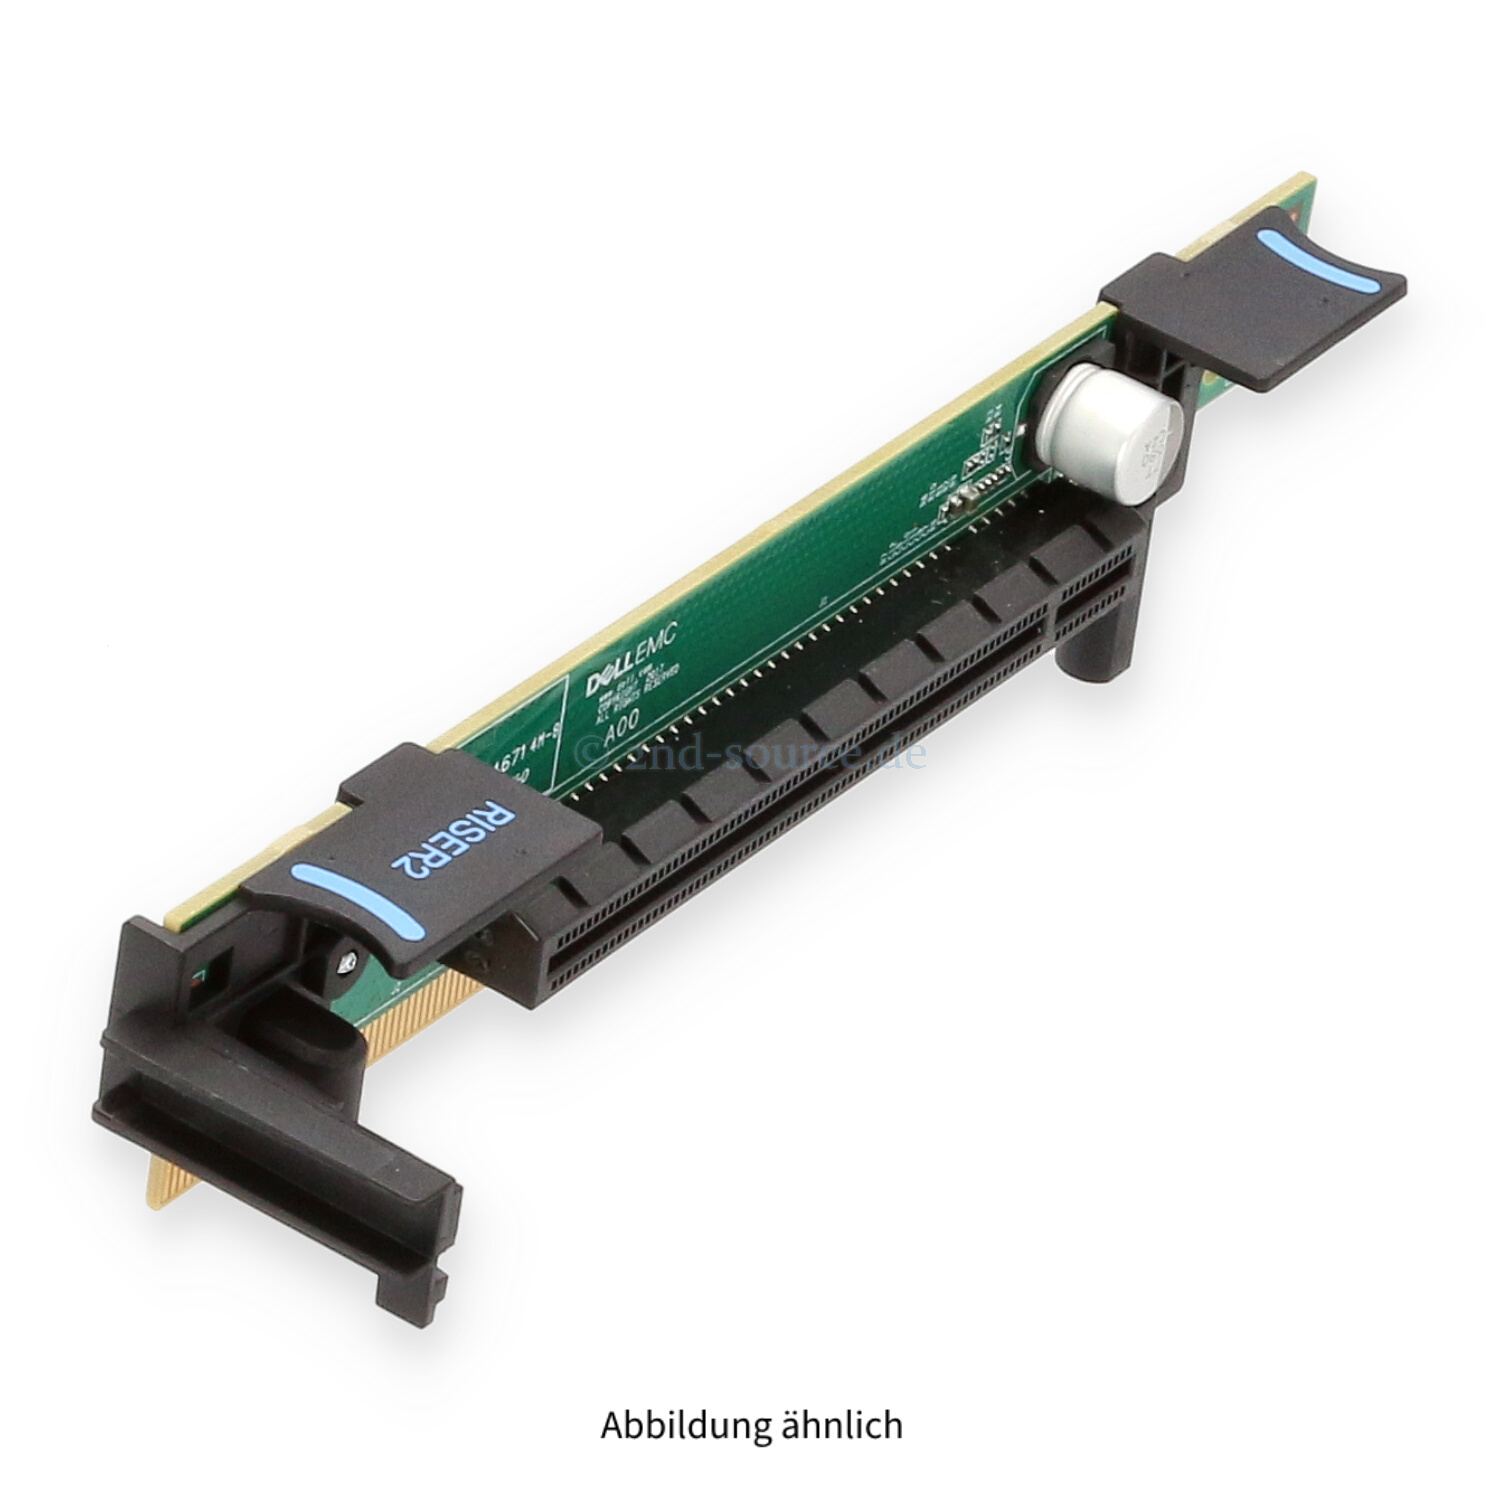 Dell PCI Express 3.0 x16 Riser Card 1 PowerEdge R620 37RG8 037RG8 | 037RG8 -REF